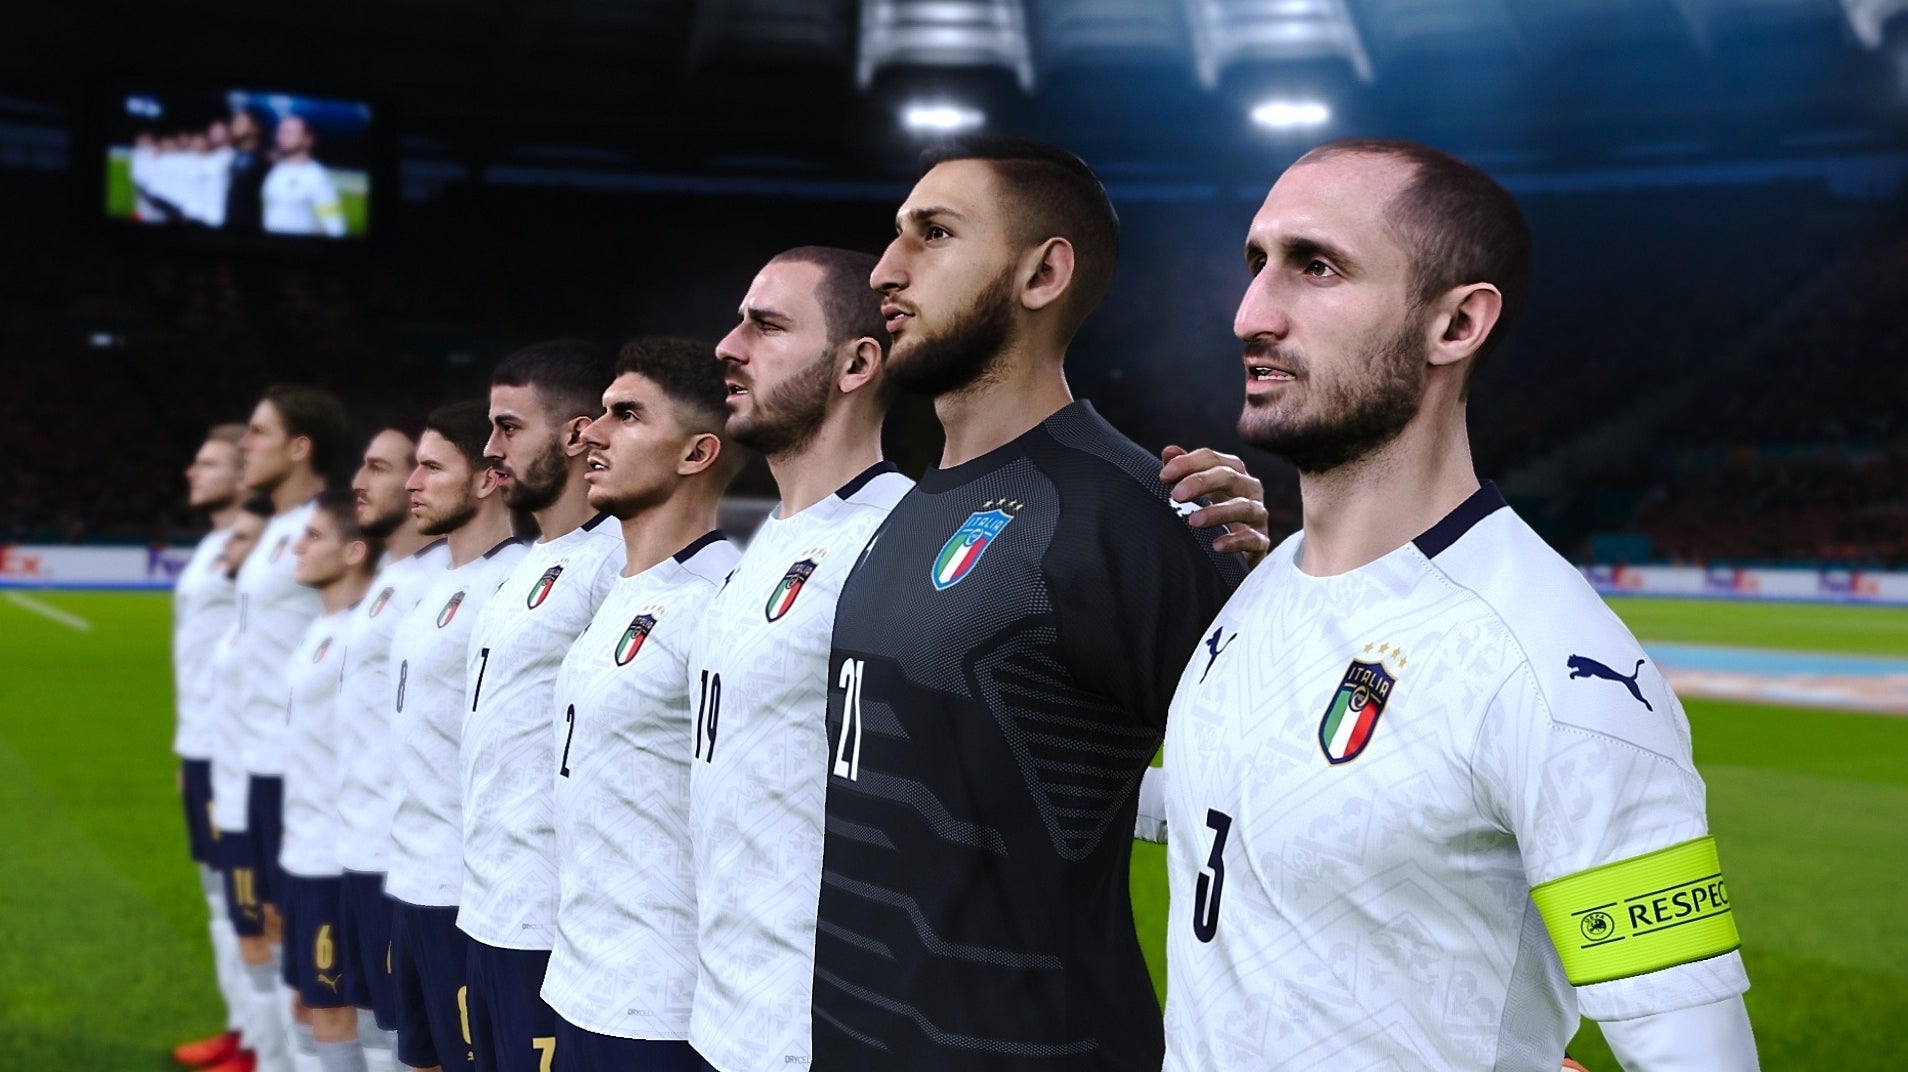 Immagine di PES 2021 ha la licenza ufficiale della nazionale italiana e una partnership esclusiva con la Serie B